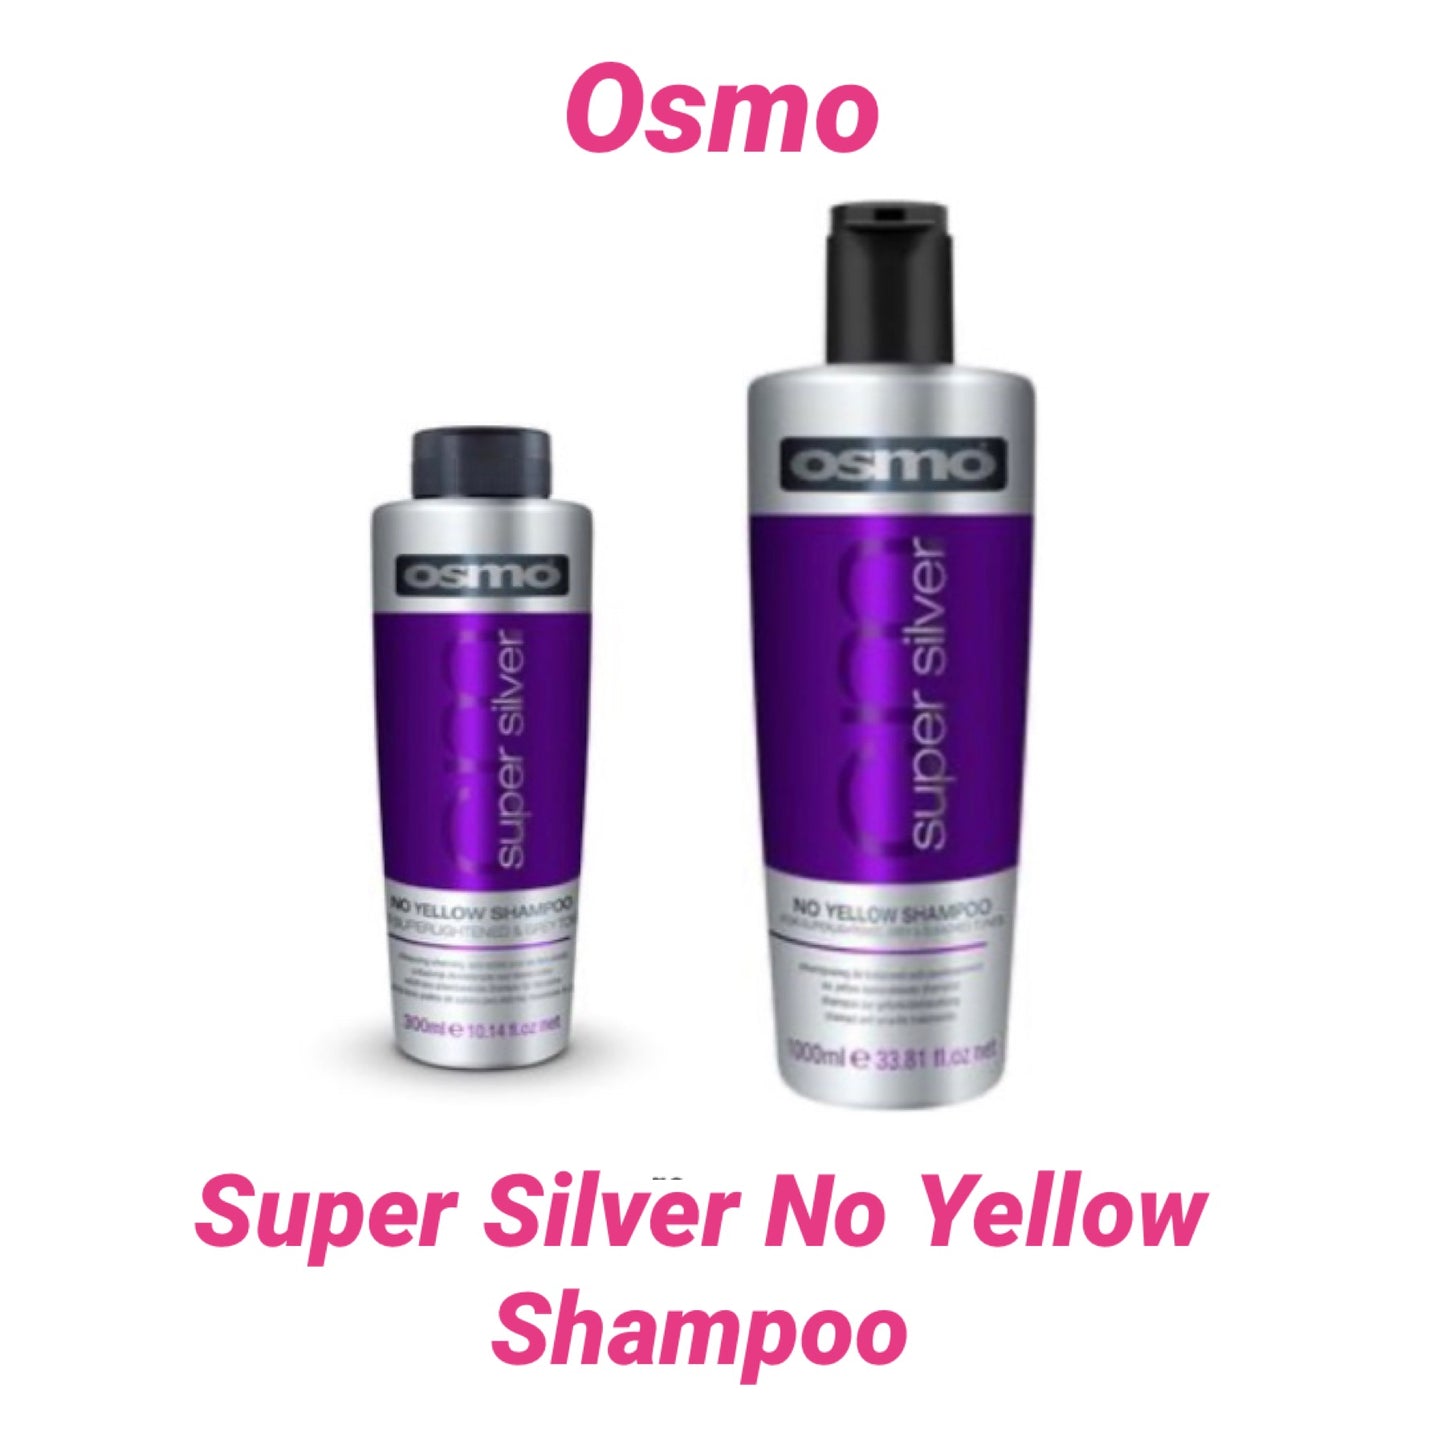 Osmo Super Silver No Yellow Shampoo